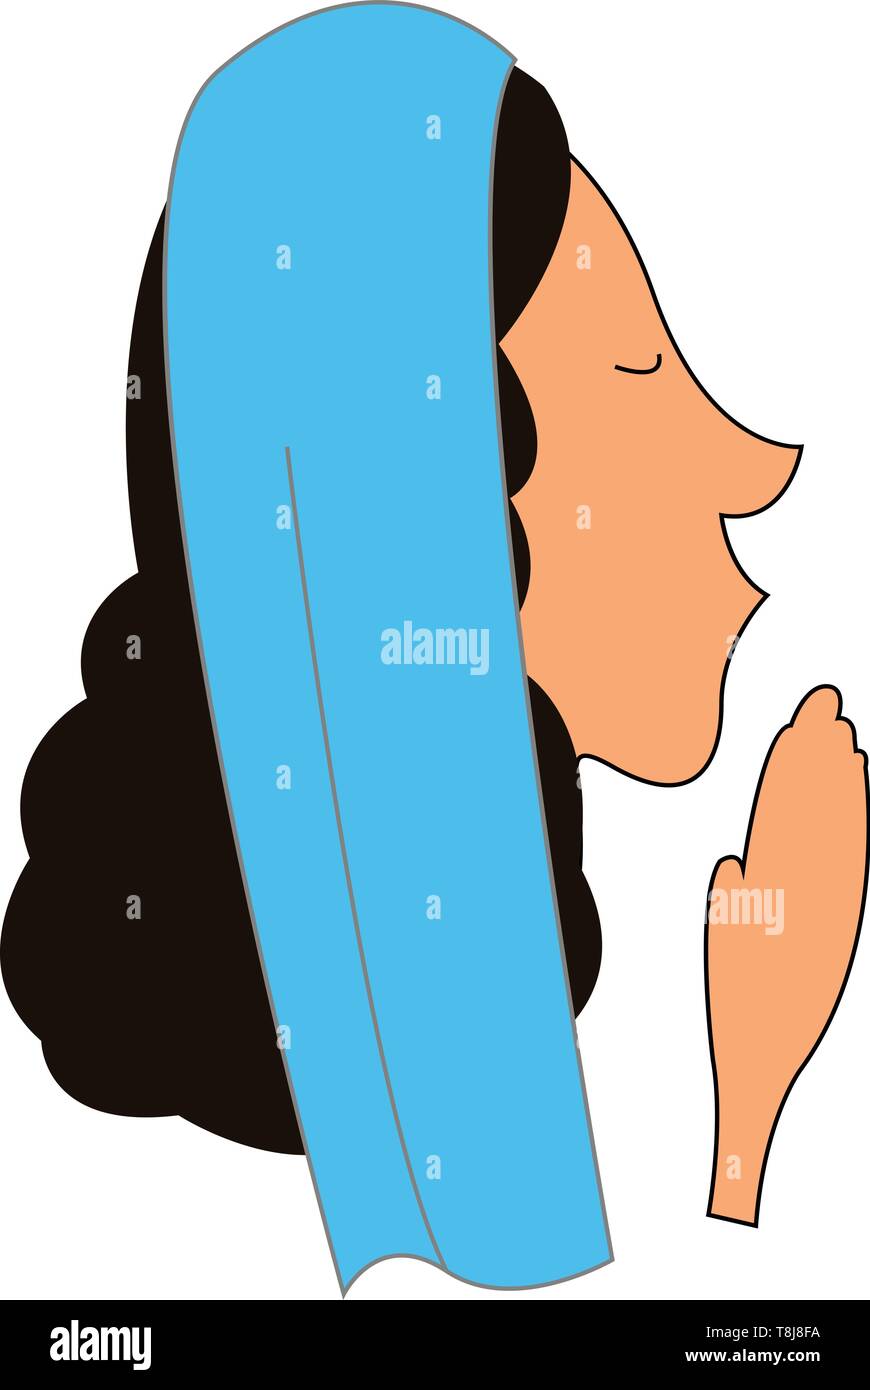 Un visage d'une femme avec de longs cheveux noirs bouclés, nez pointu, les mains ensemble et un châle bleu sur sa tête a fermé les yeux en priant, scénario, couleur Illustration de Vecteur